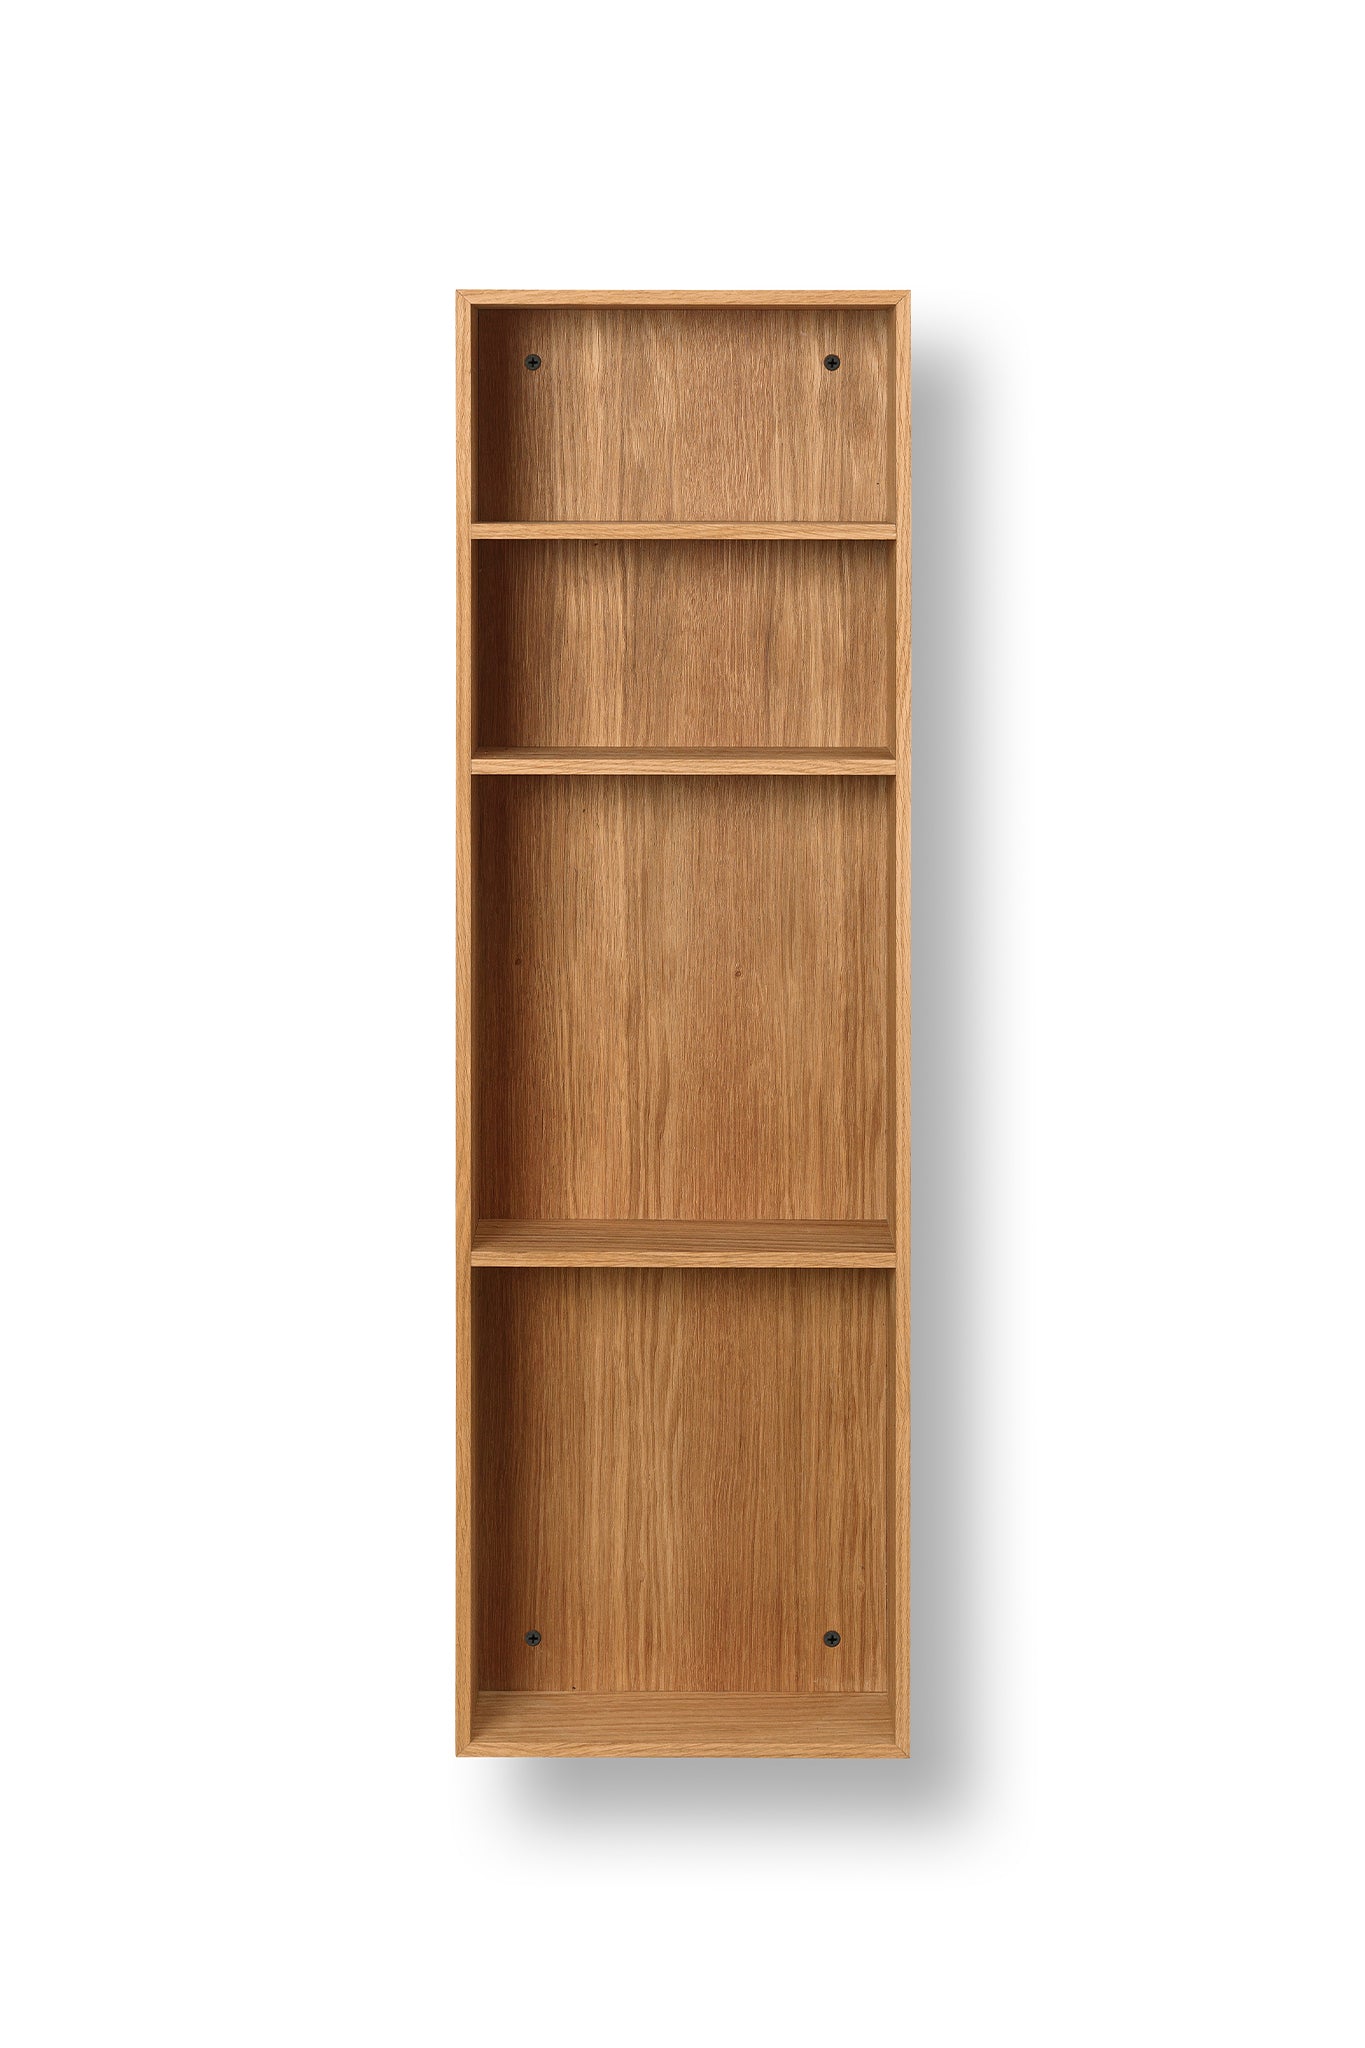 Ferm Living Bon Shelf in Oiled Oak - Marz DesignsFerm Living